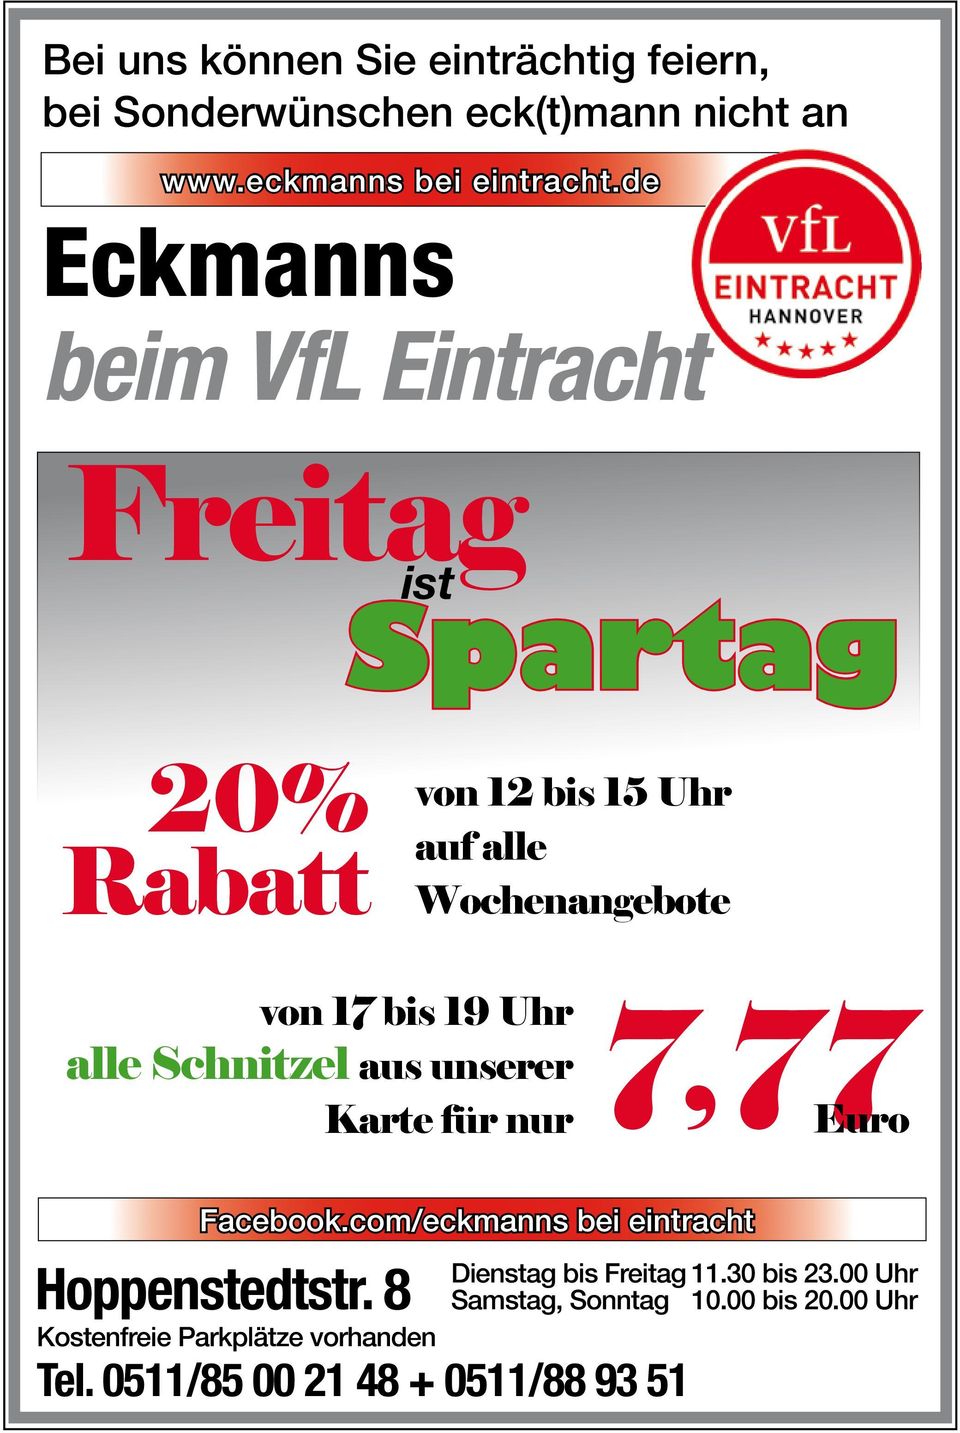 Uhr alle Schnitzel aus unserer Karte für nur 7,77 Euro Facebook.com/eckmanns bei eintracht Hoppenstedtstr.